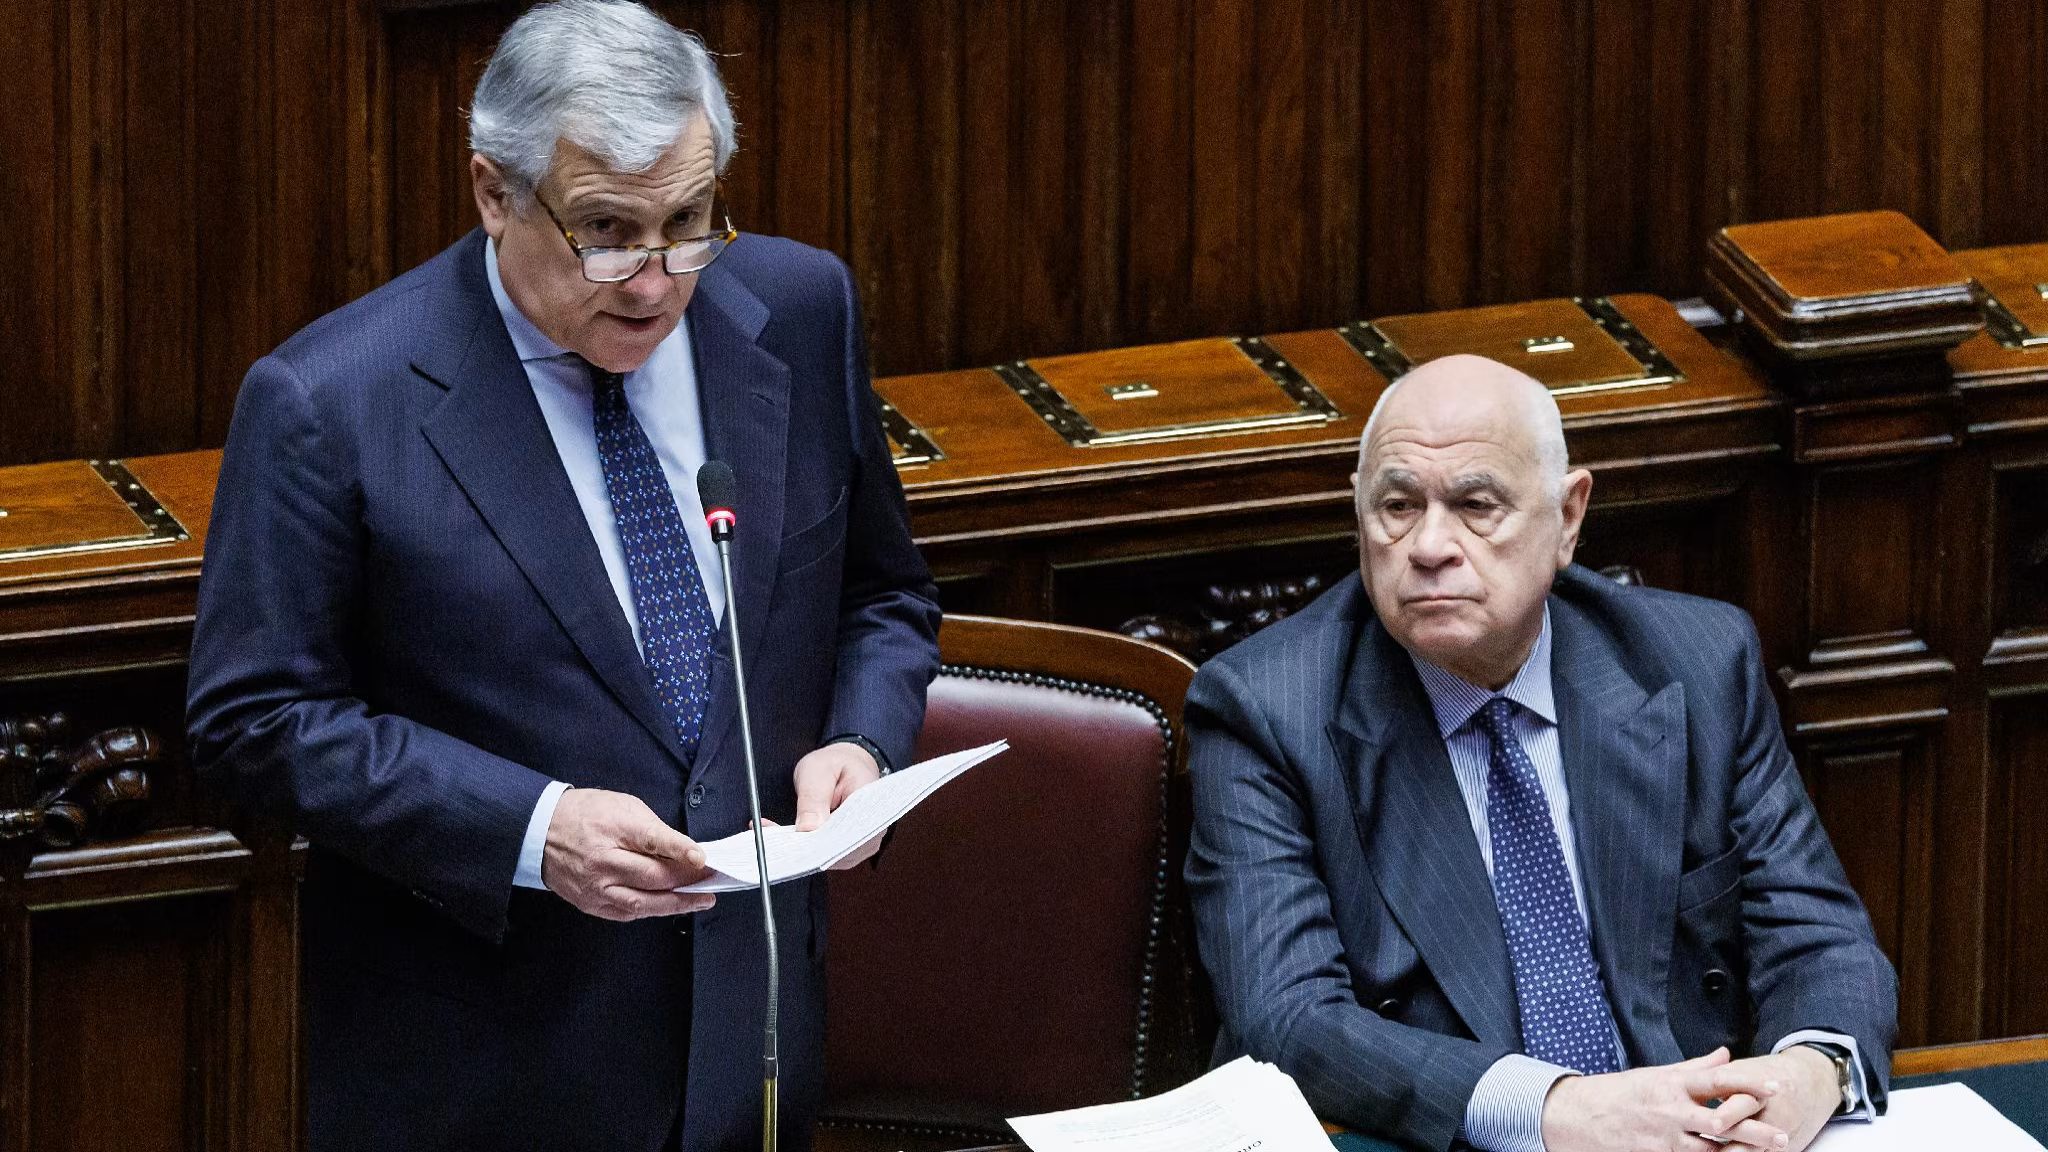 Caso Salis,Tajani si scontra con Provenzano e Bonelli